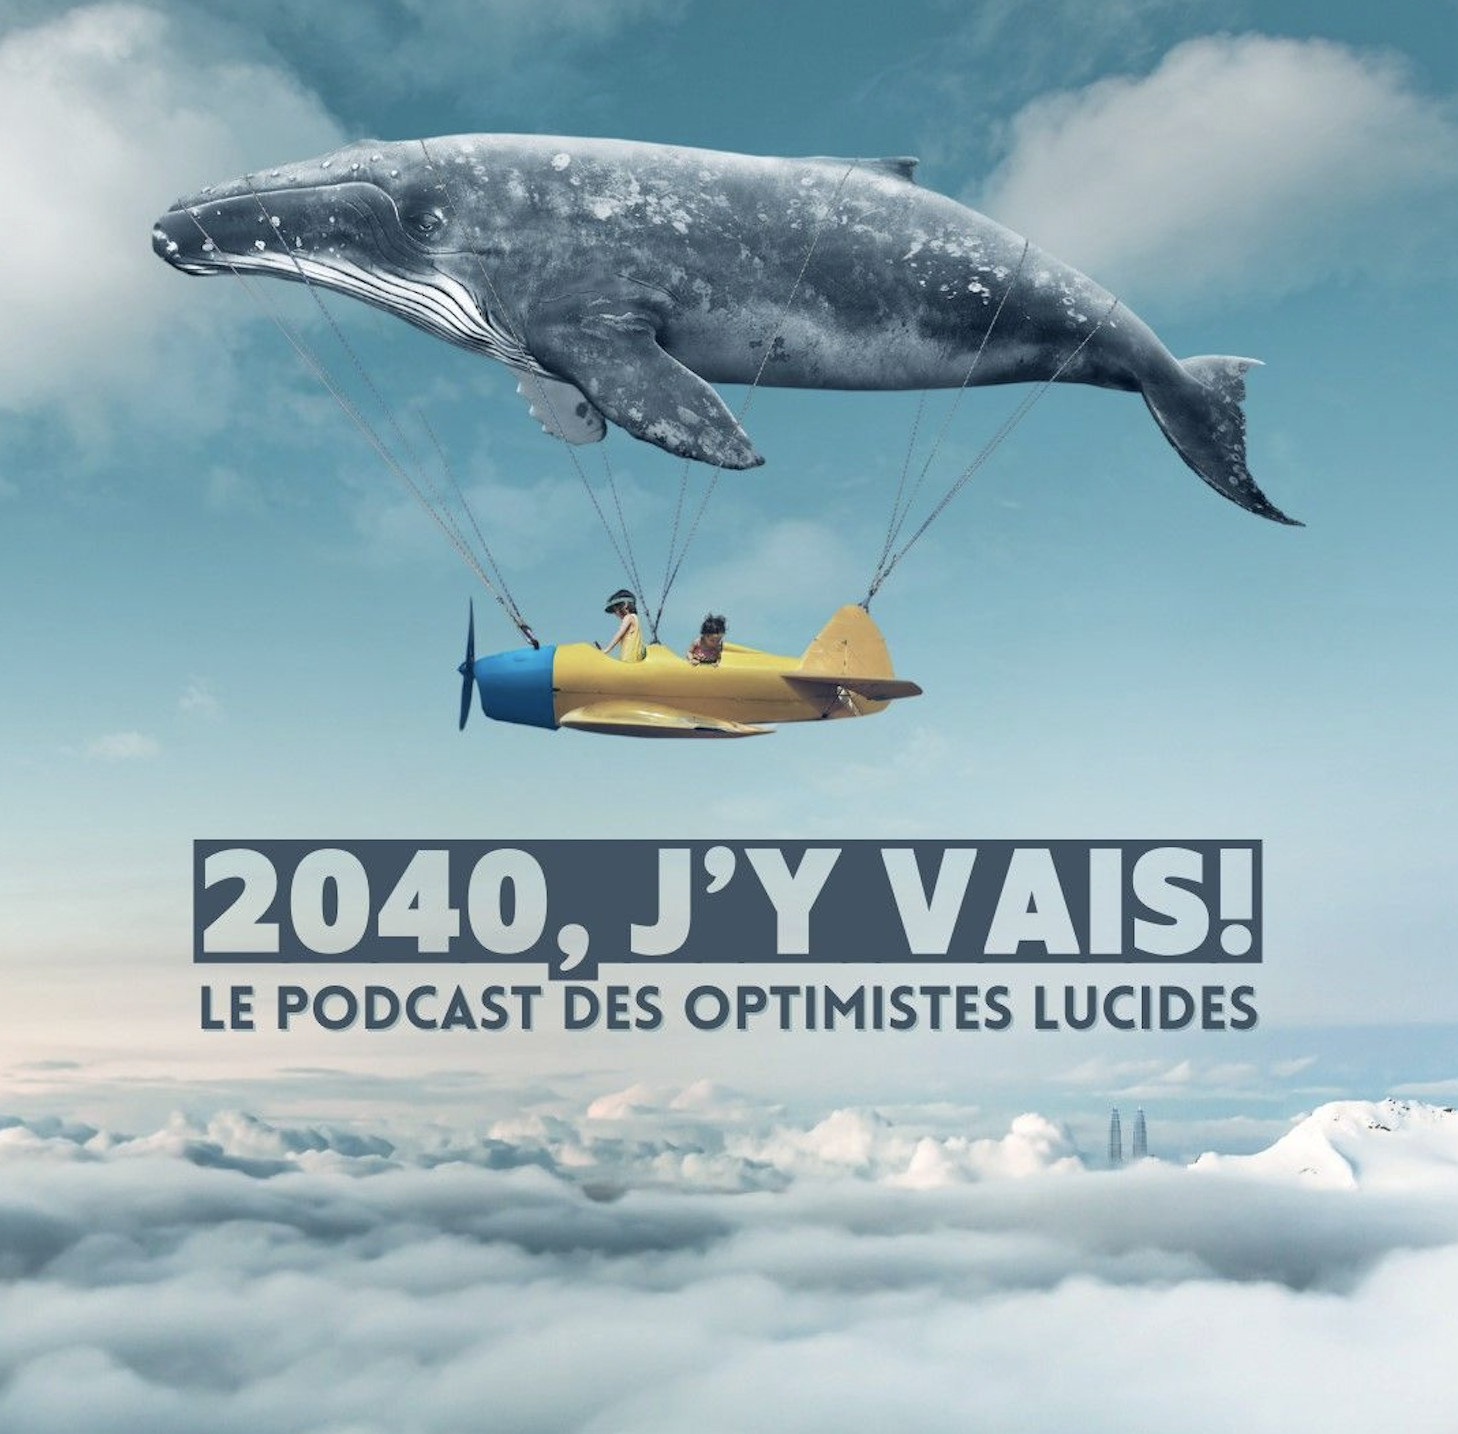 Le Hub des possibles launches its podcast « 2040, j’y vais »